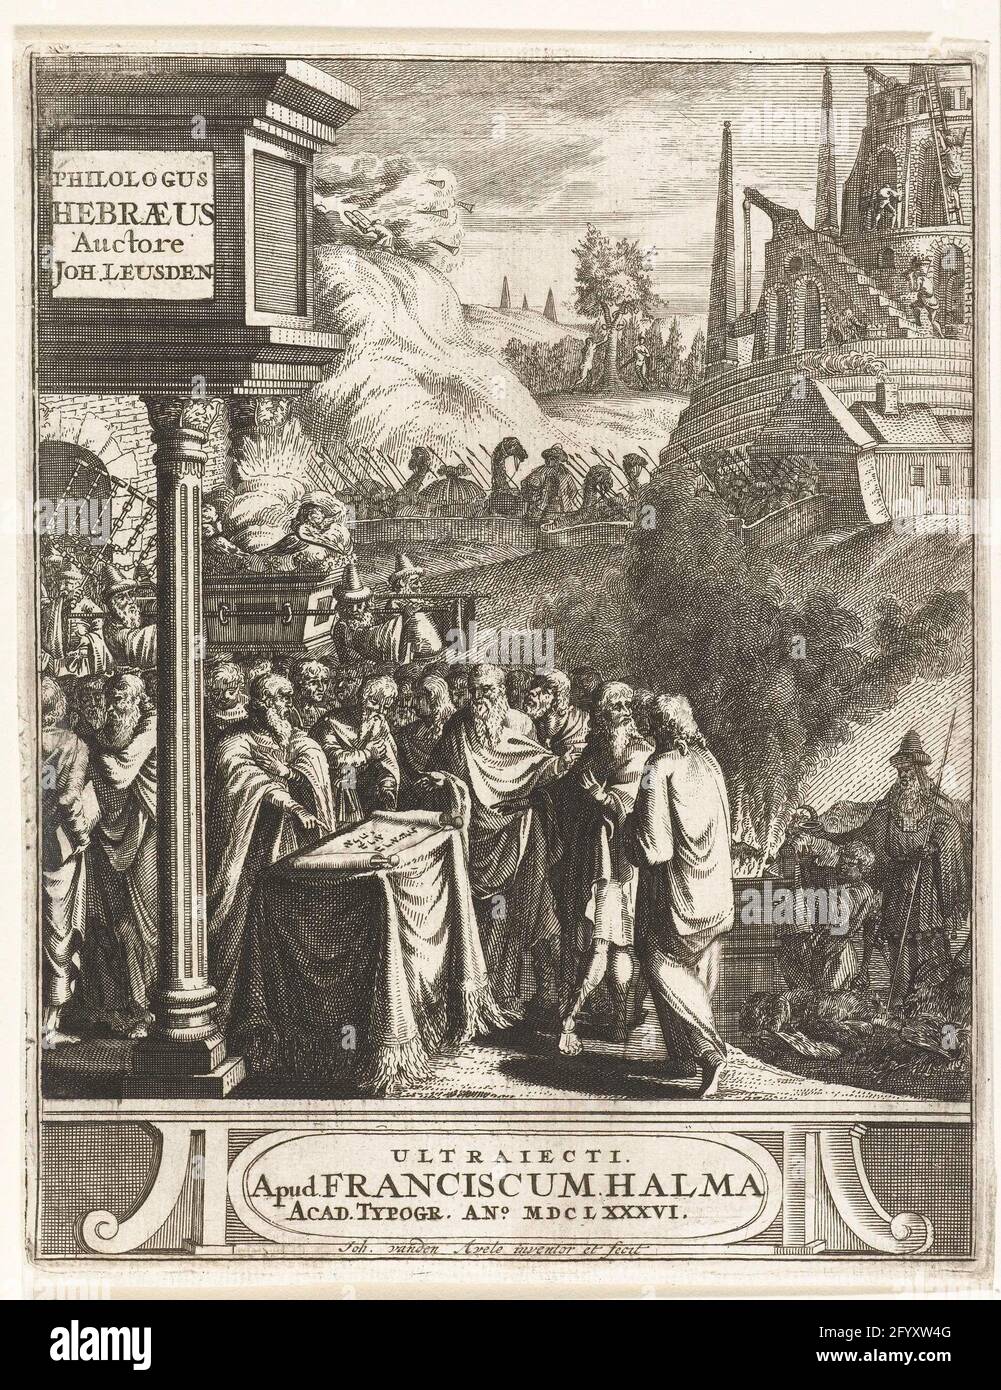 Compilation de scènes de l'histoire juive; page de titre pour Johannes  Leusden, Philologus Hebraeus, Utrecht, 1686. Différentes scènes de  l'histoire juive sont combinées. Étant de voir la chute d'Adam et d'Eva, le